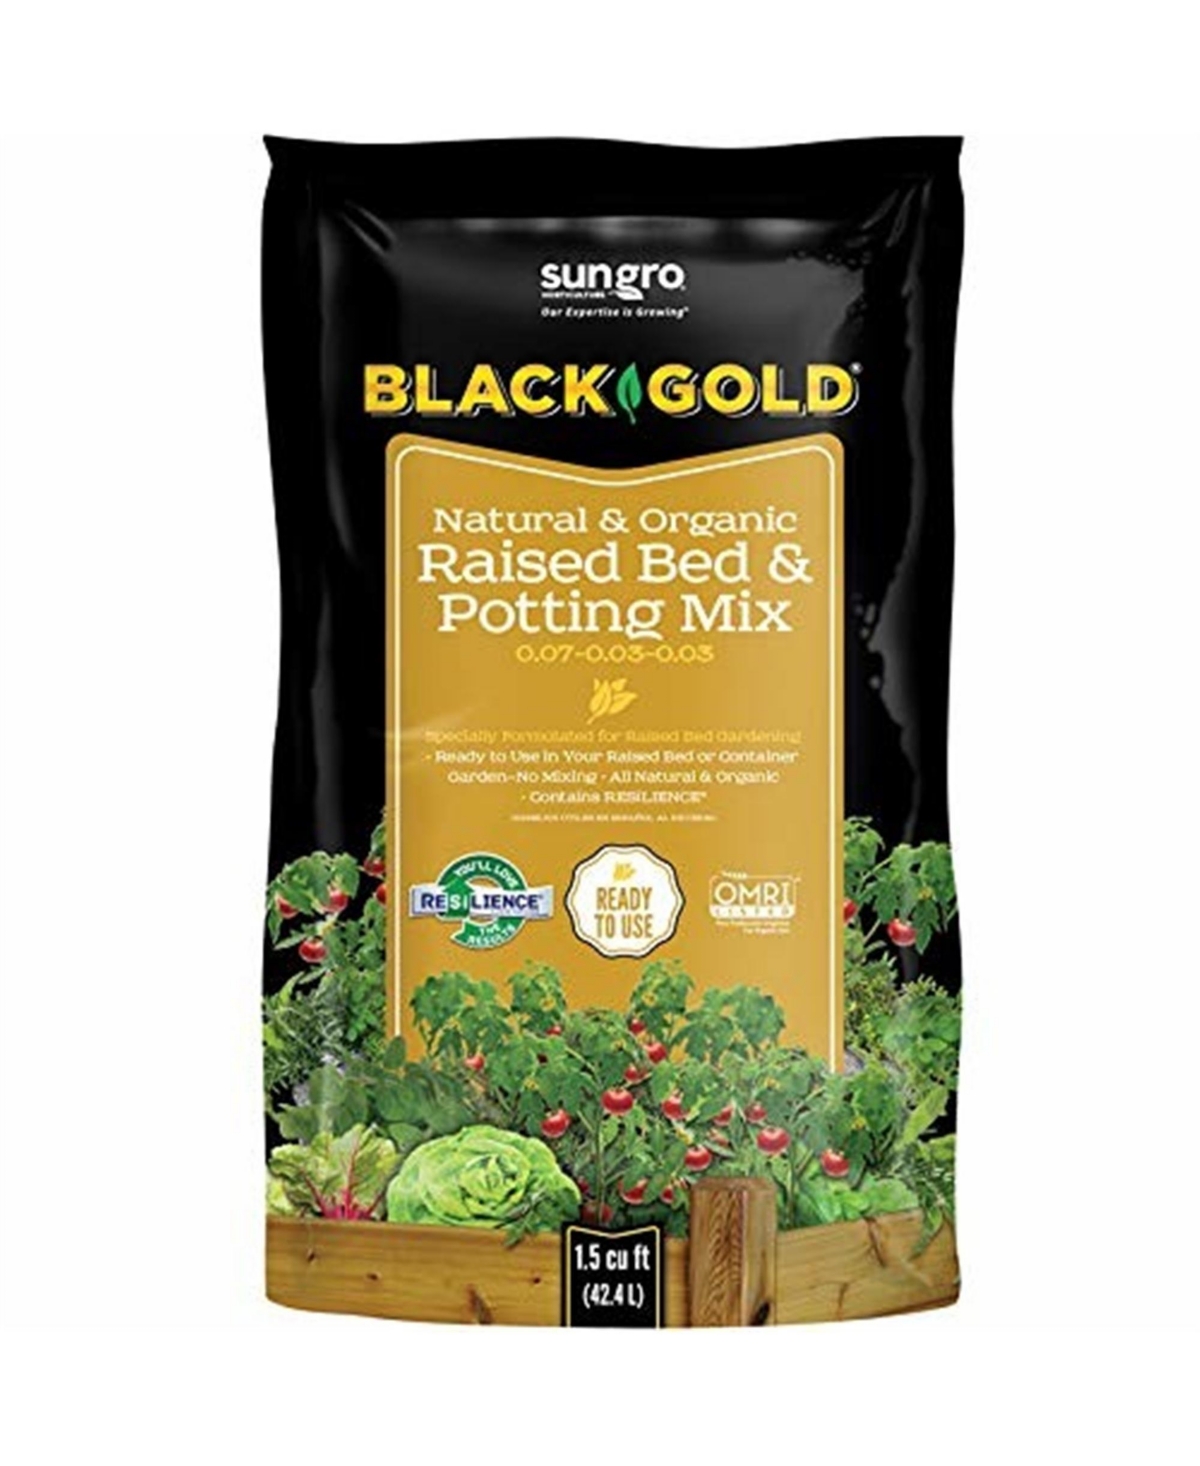 Black Gold Natural & Organic Bed & Pott Mix, 1.5-Cu. Ft. - Qty 1